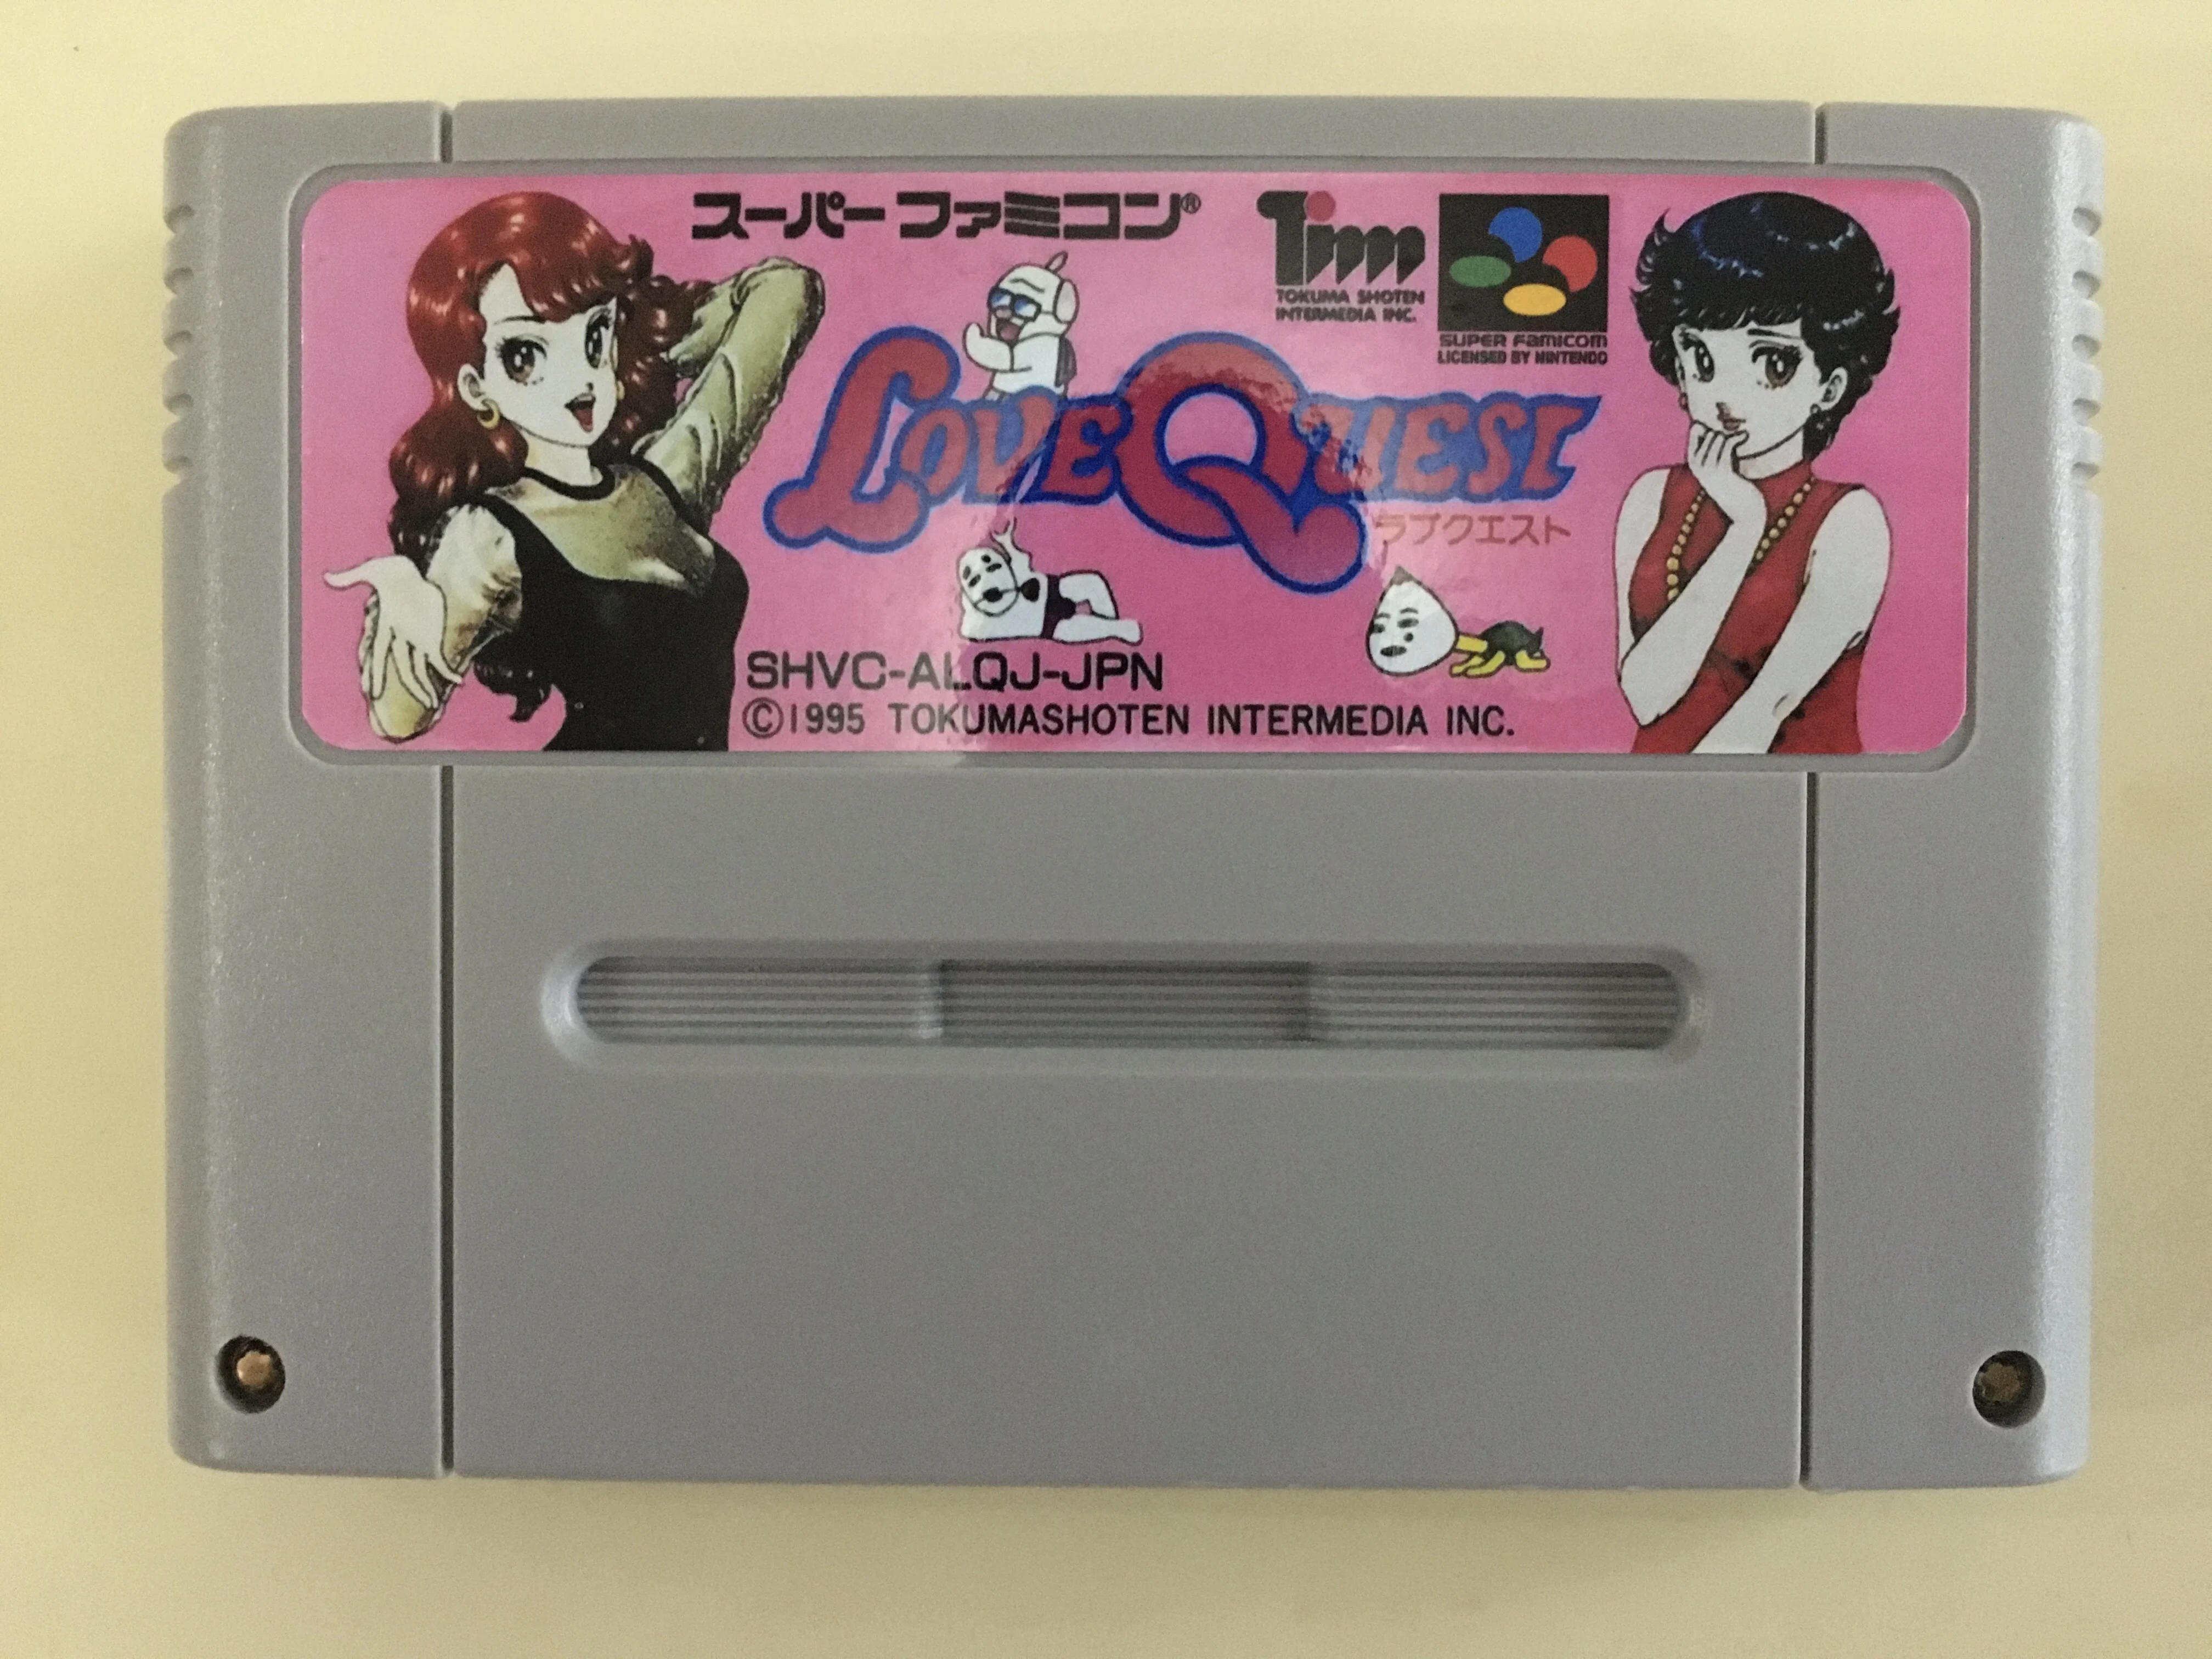 Cartas de jogo: love quest (versão ntsc japonesa!)